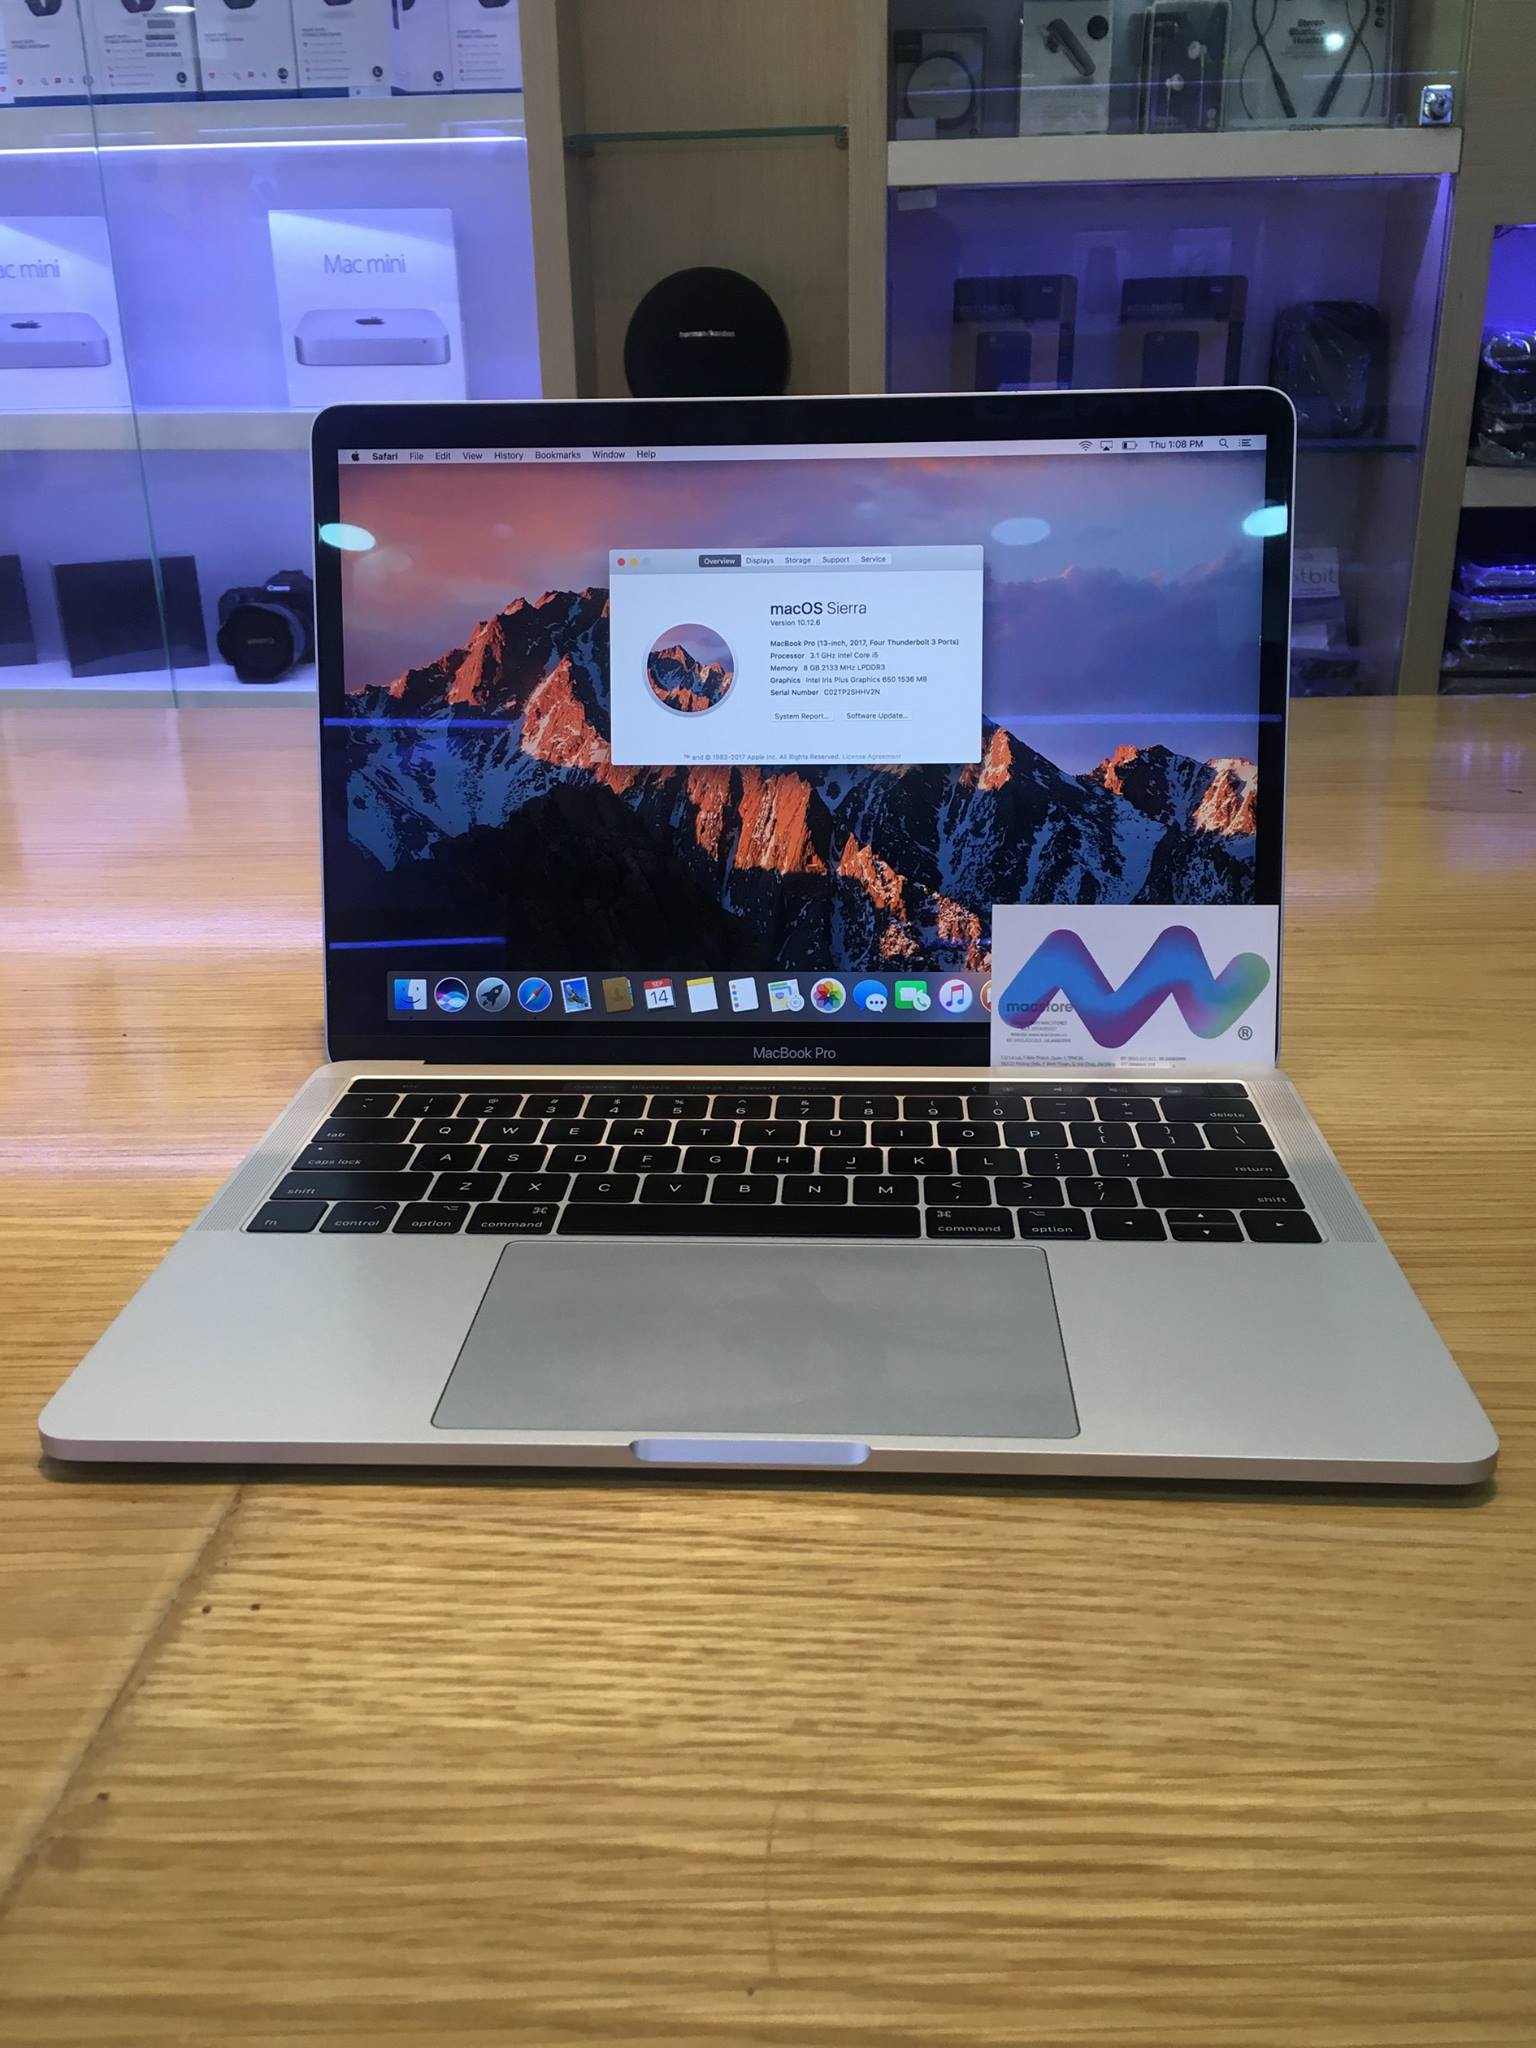 Phần thiết kế của Macbook Pro 2017